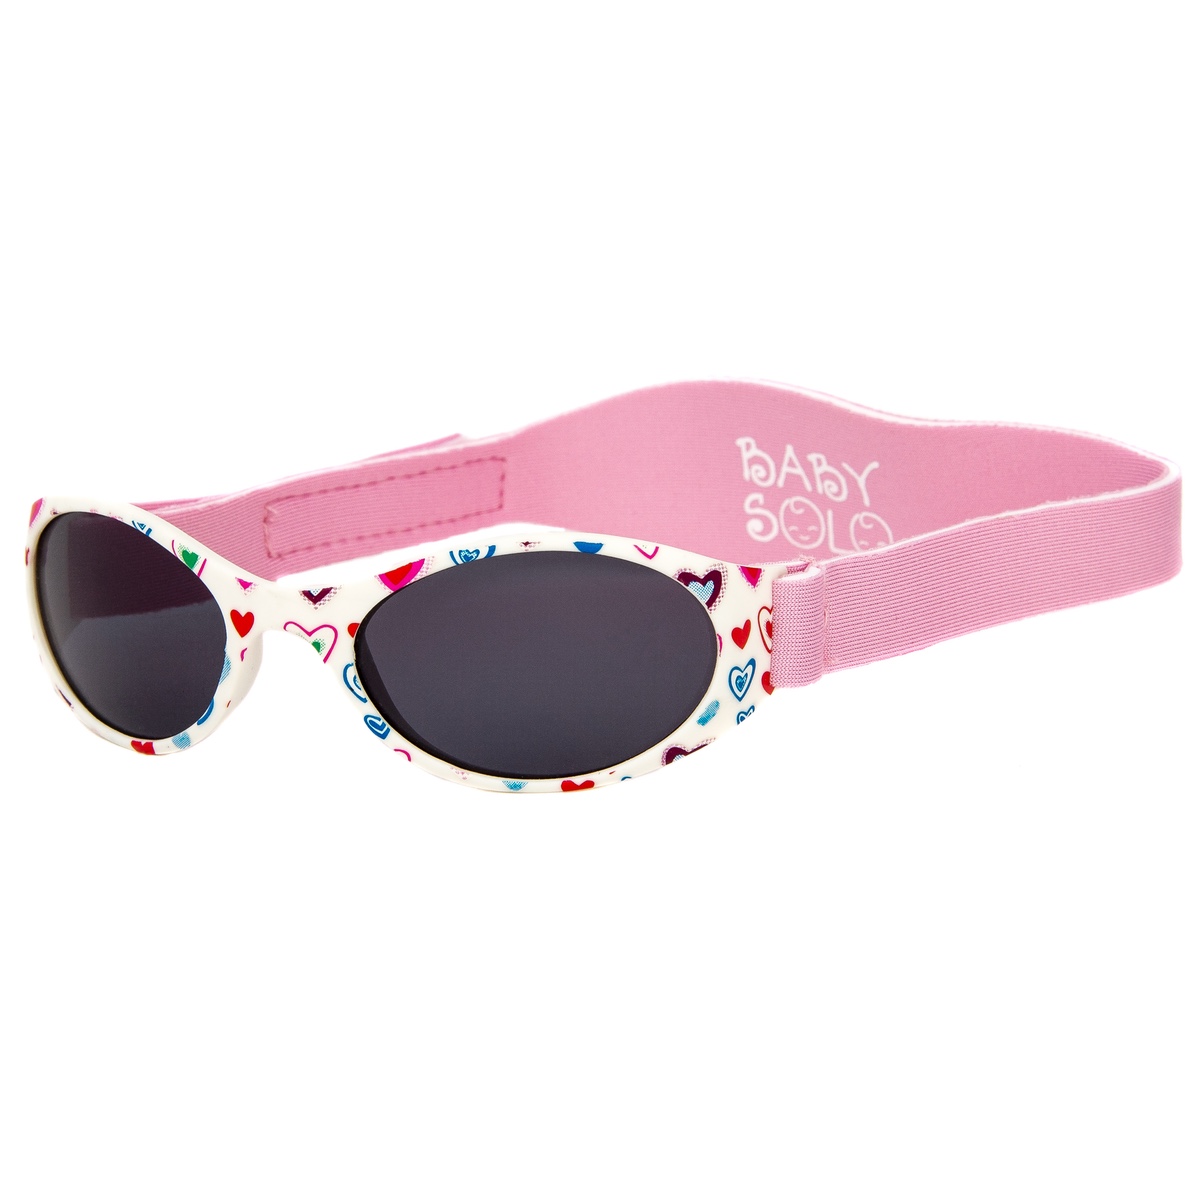 Toddler Sunglasses Blue Half Rimmed Frame Pink Arms UV400 Lens BT003 Baby 